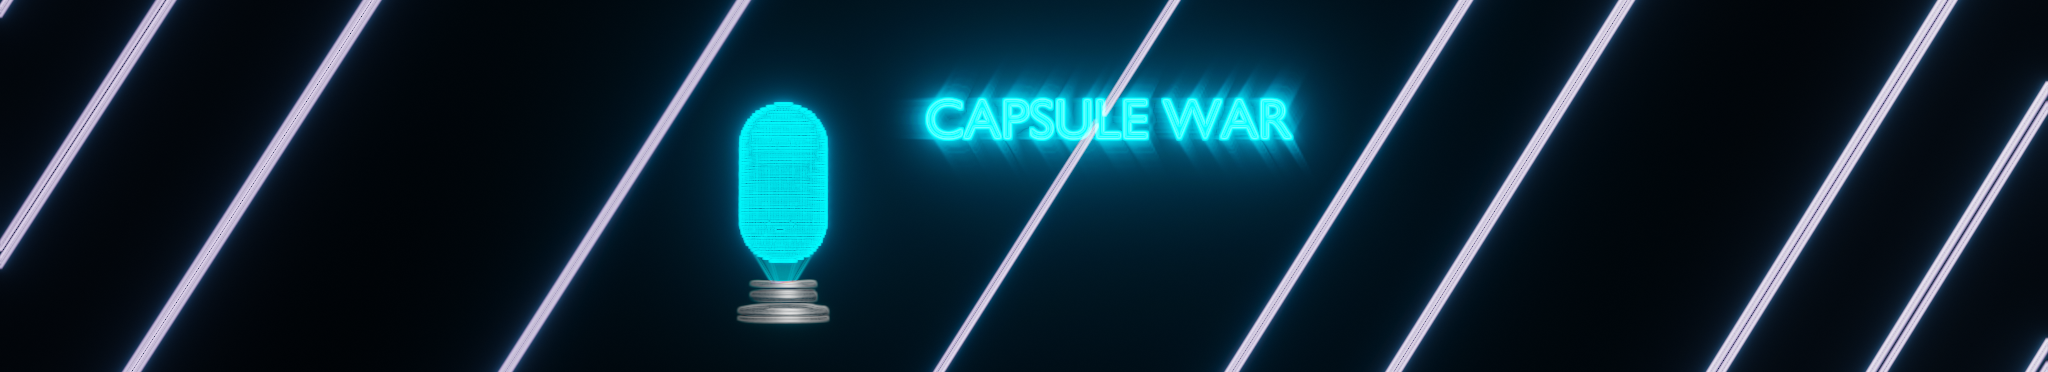 Capsule War: Capsule Hologram